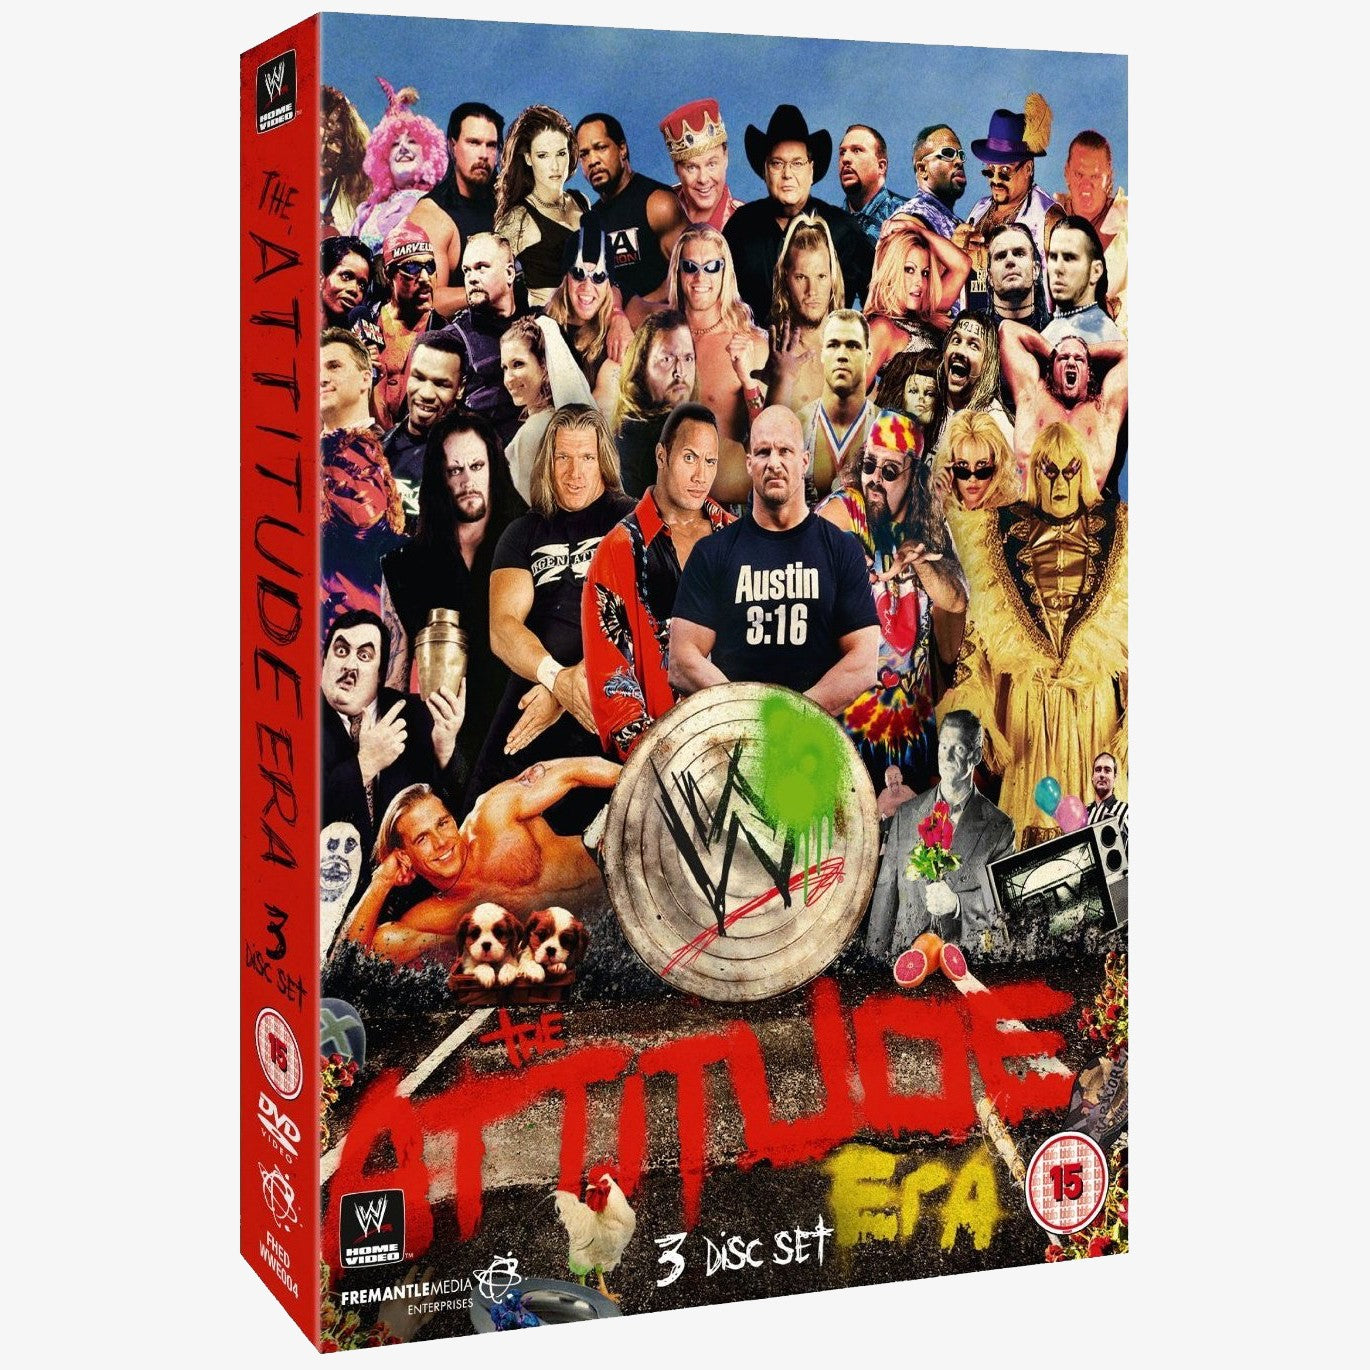 WWE The Attitude Era DVD